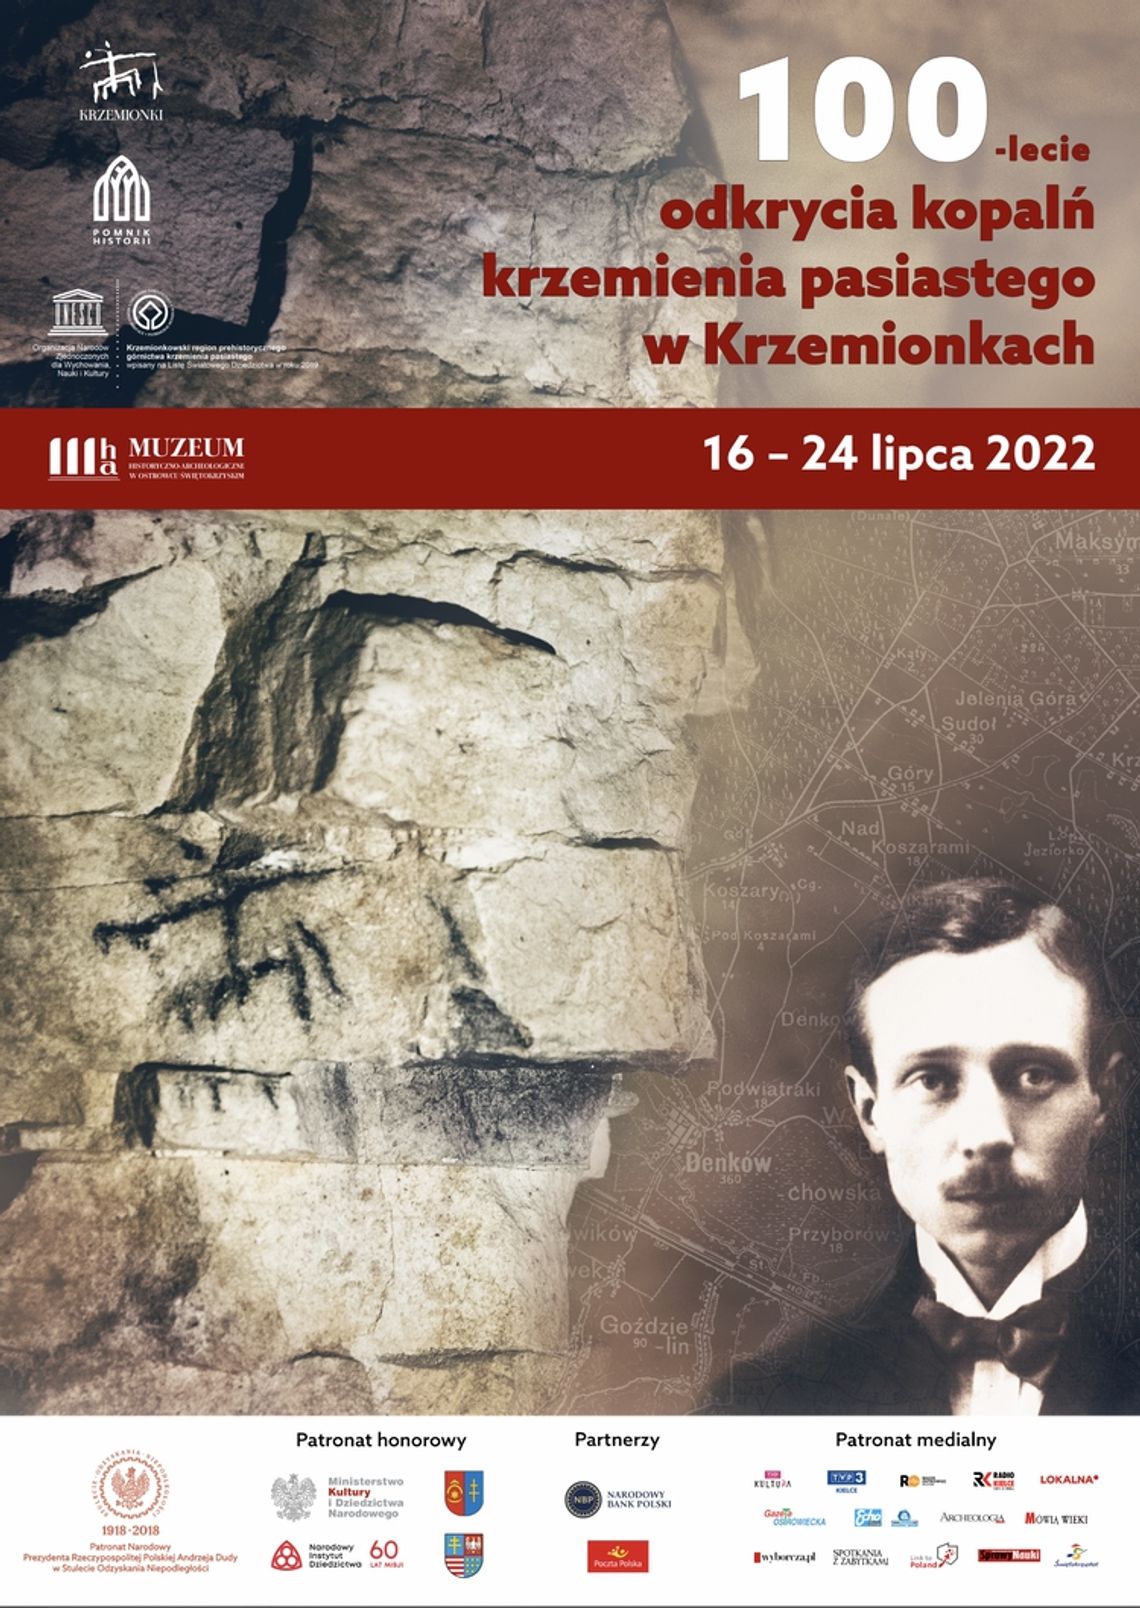 100-lecie odkrycia kopalń krzemienia pasiastego w Krzemionkach